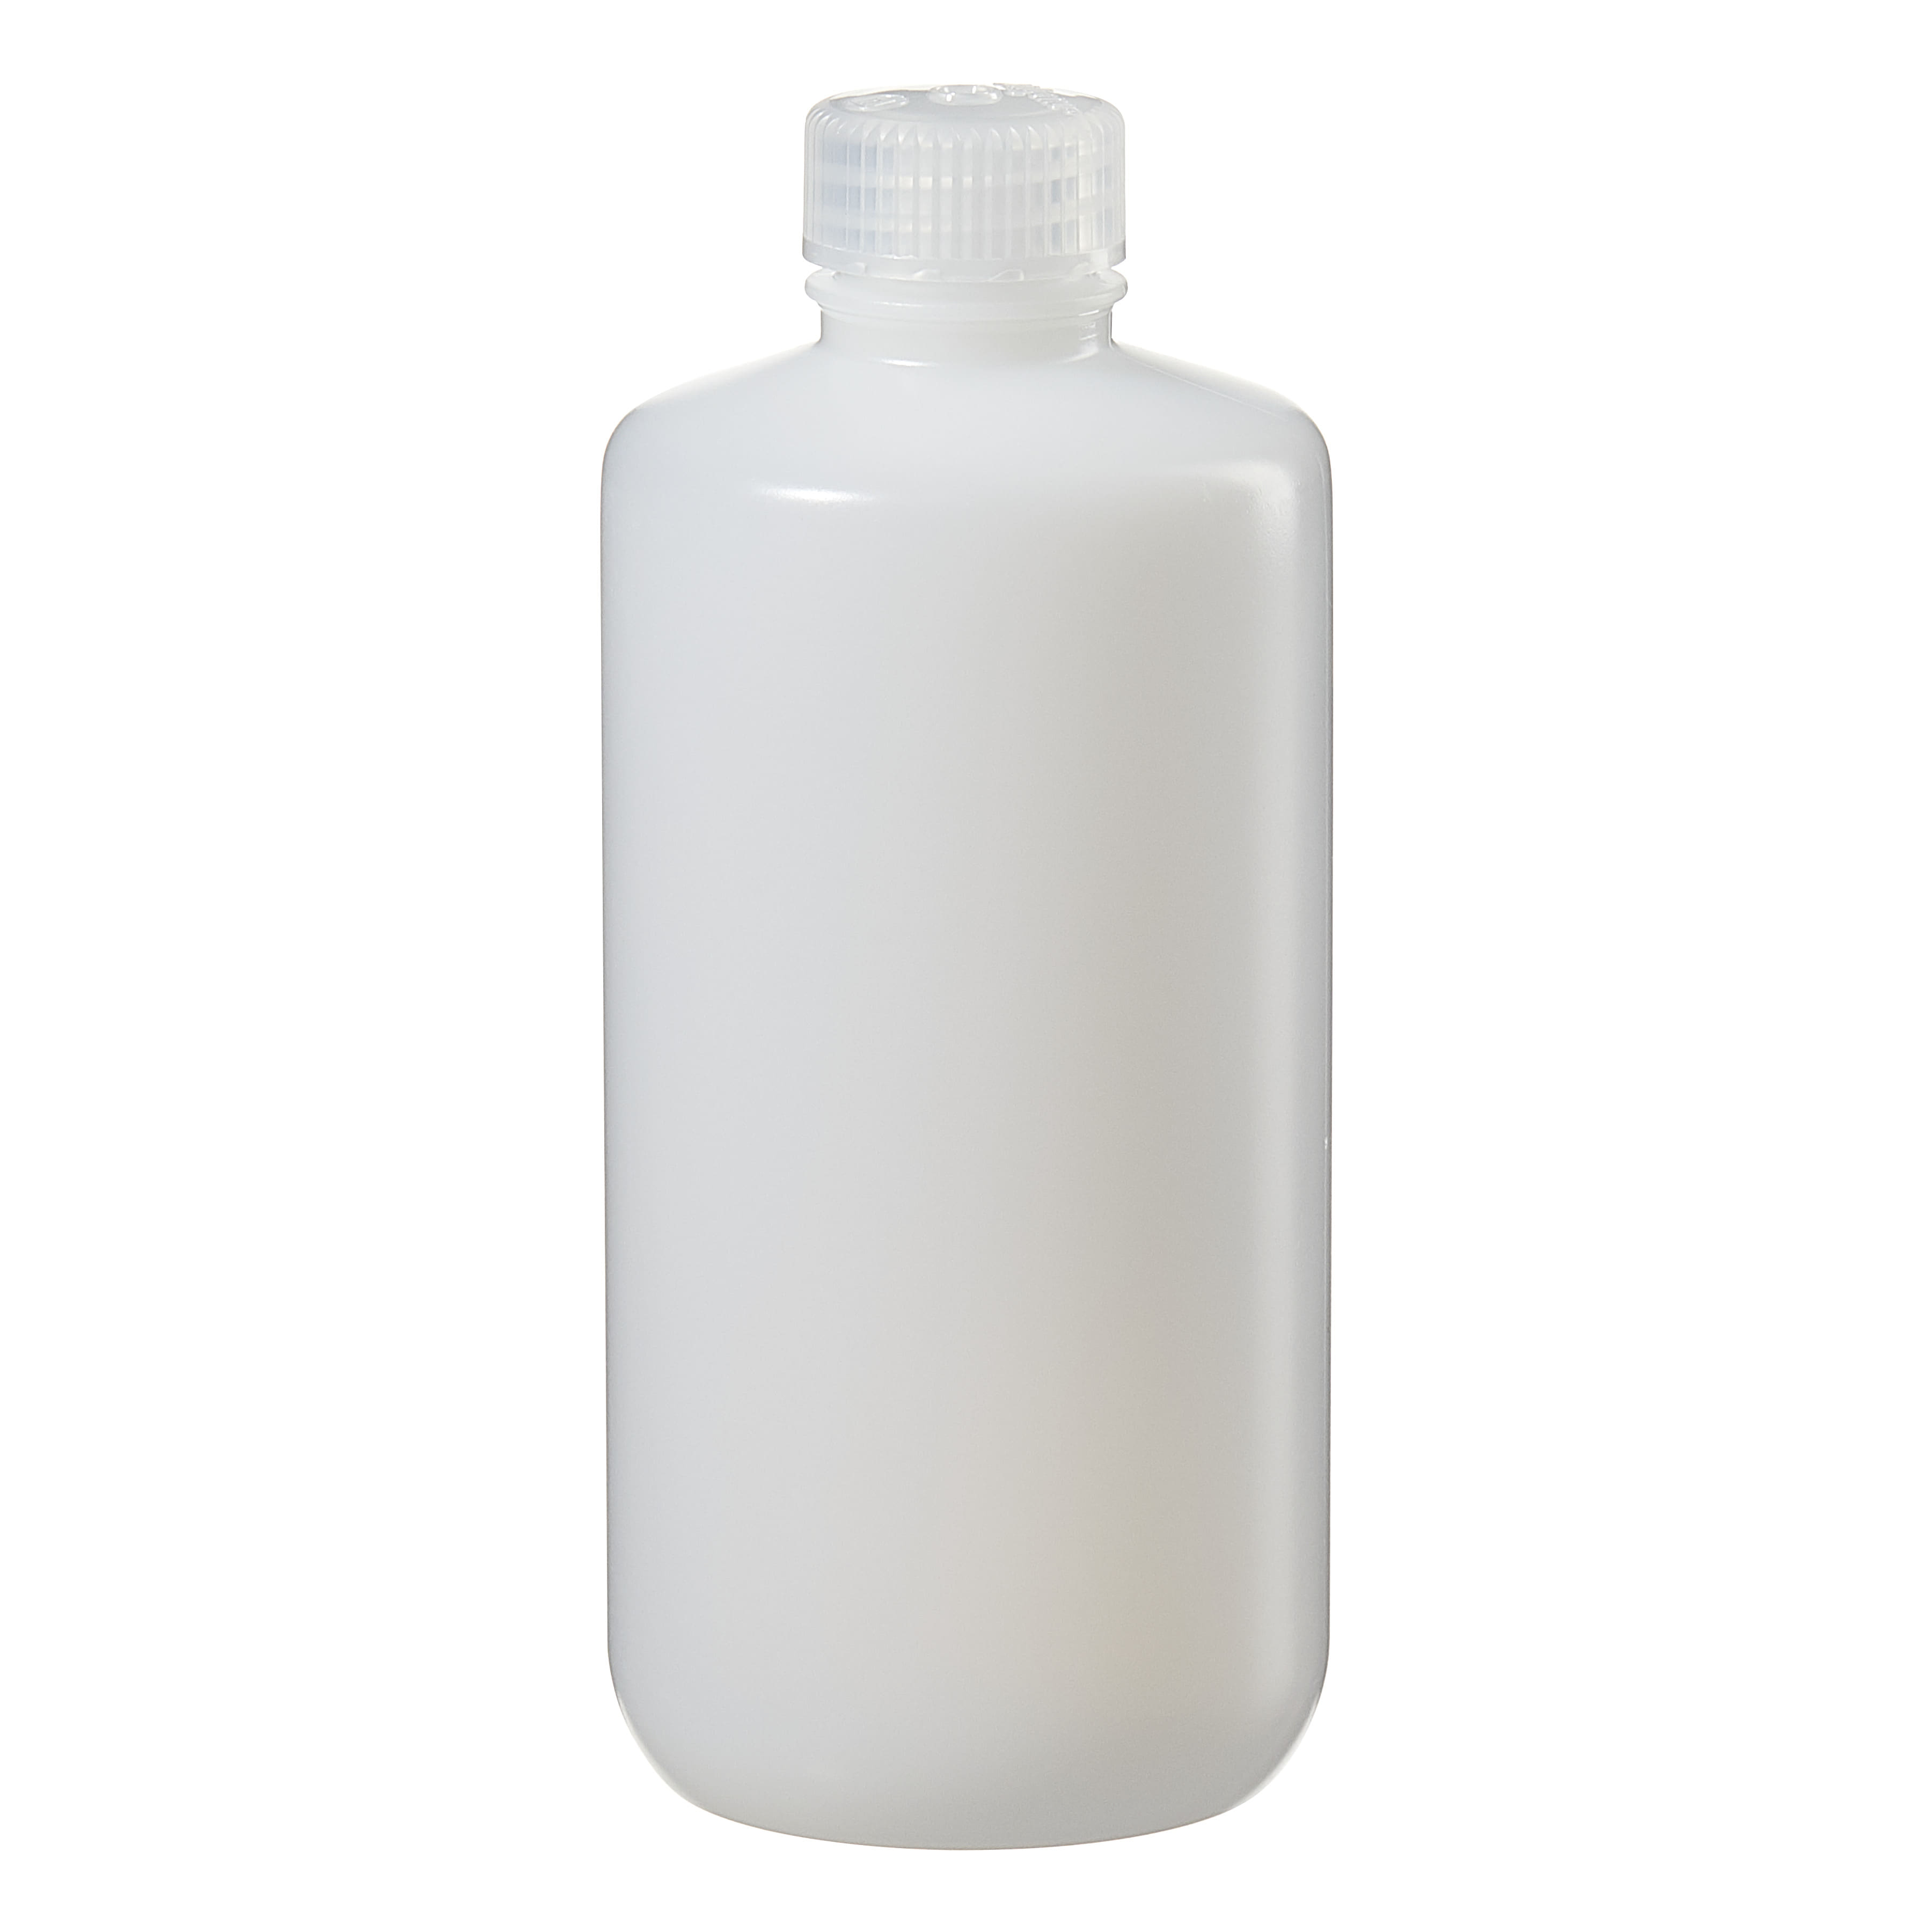 [Thermo Nalgene] 2002-0016 / 500mL Nalgene Narrow-Mouth HDPE Lab Quality Bottle